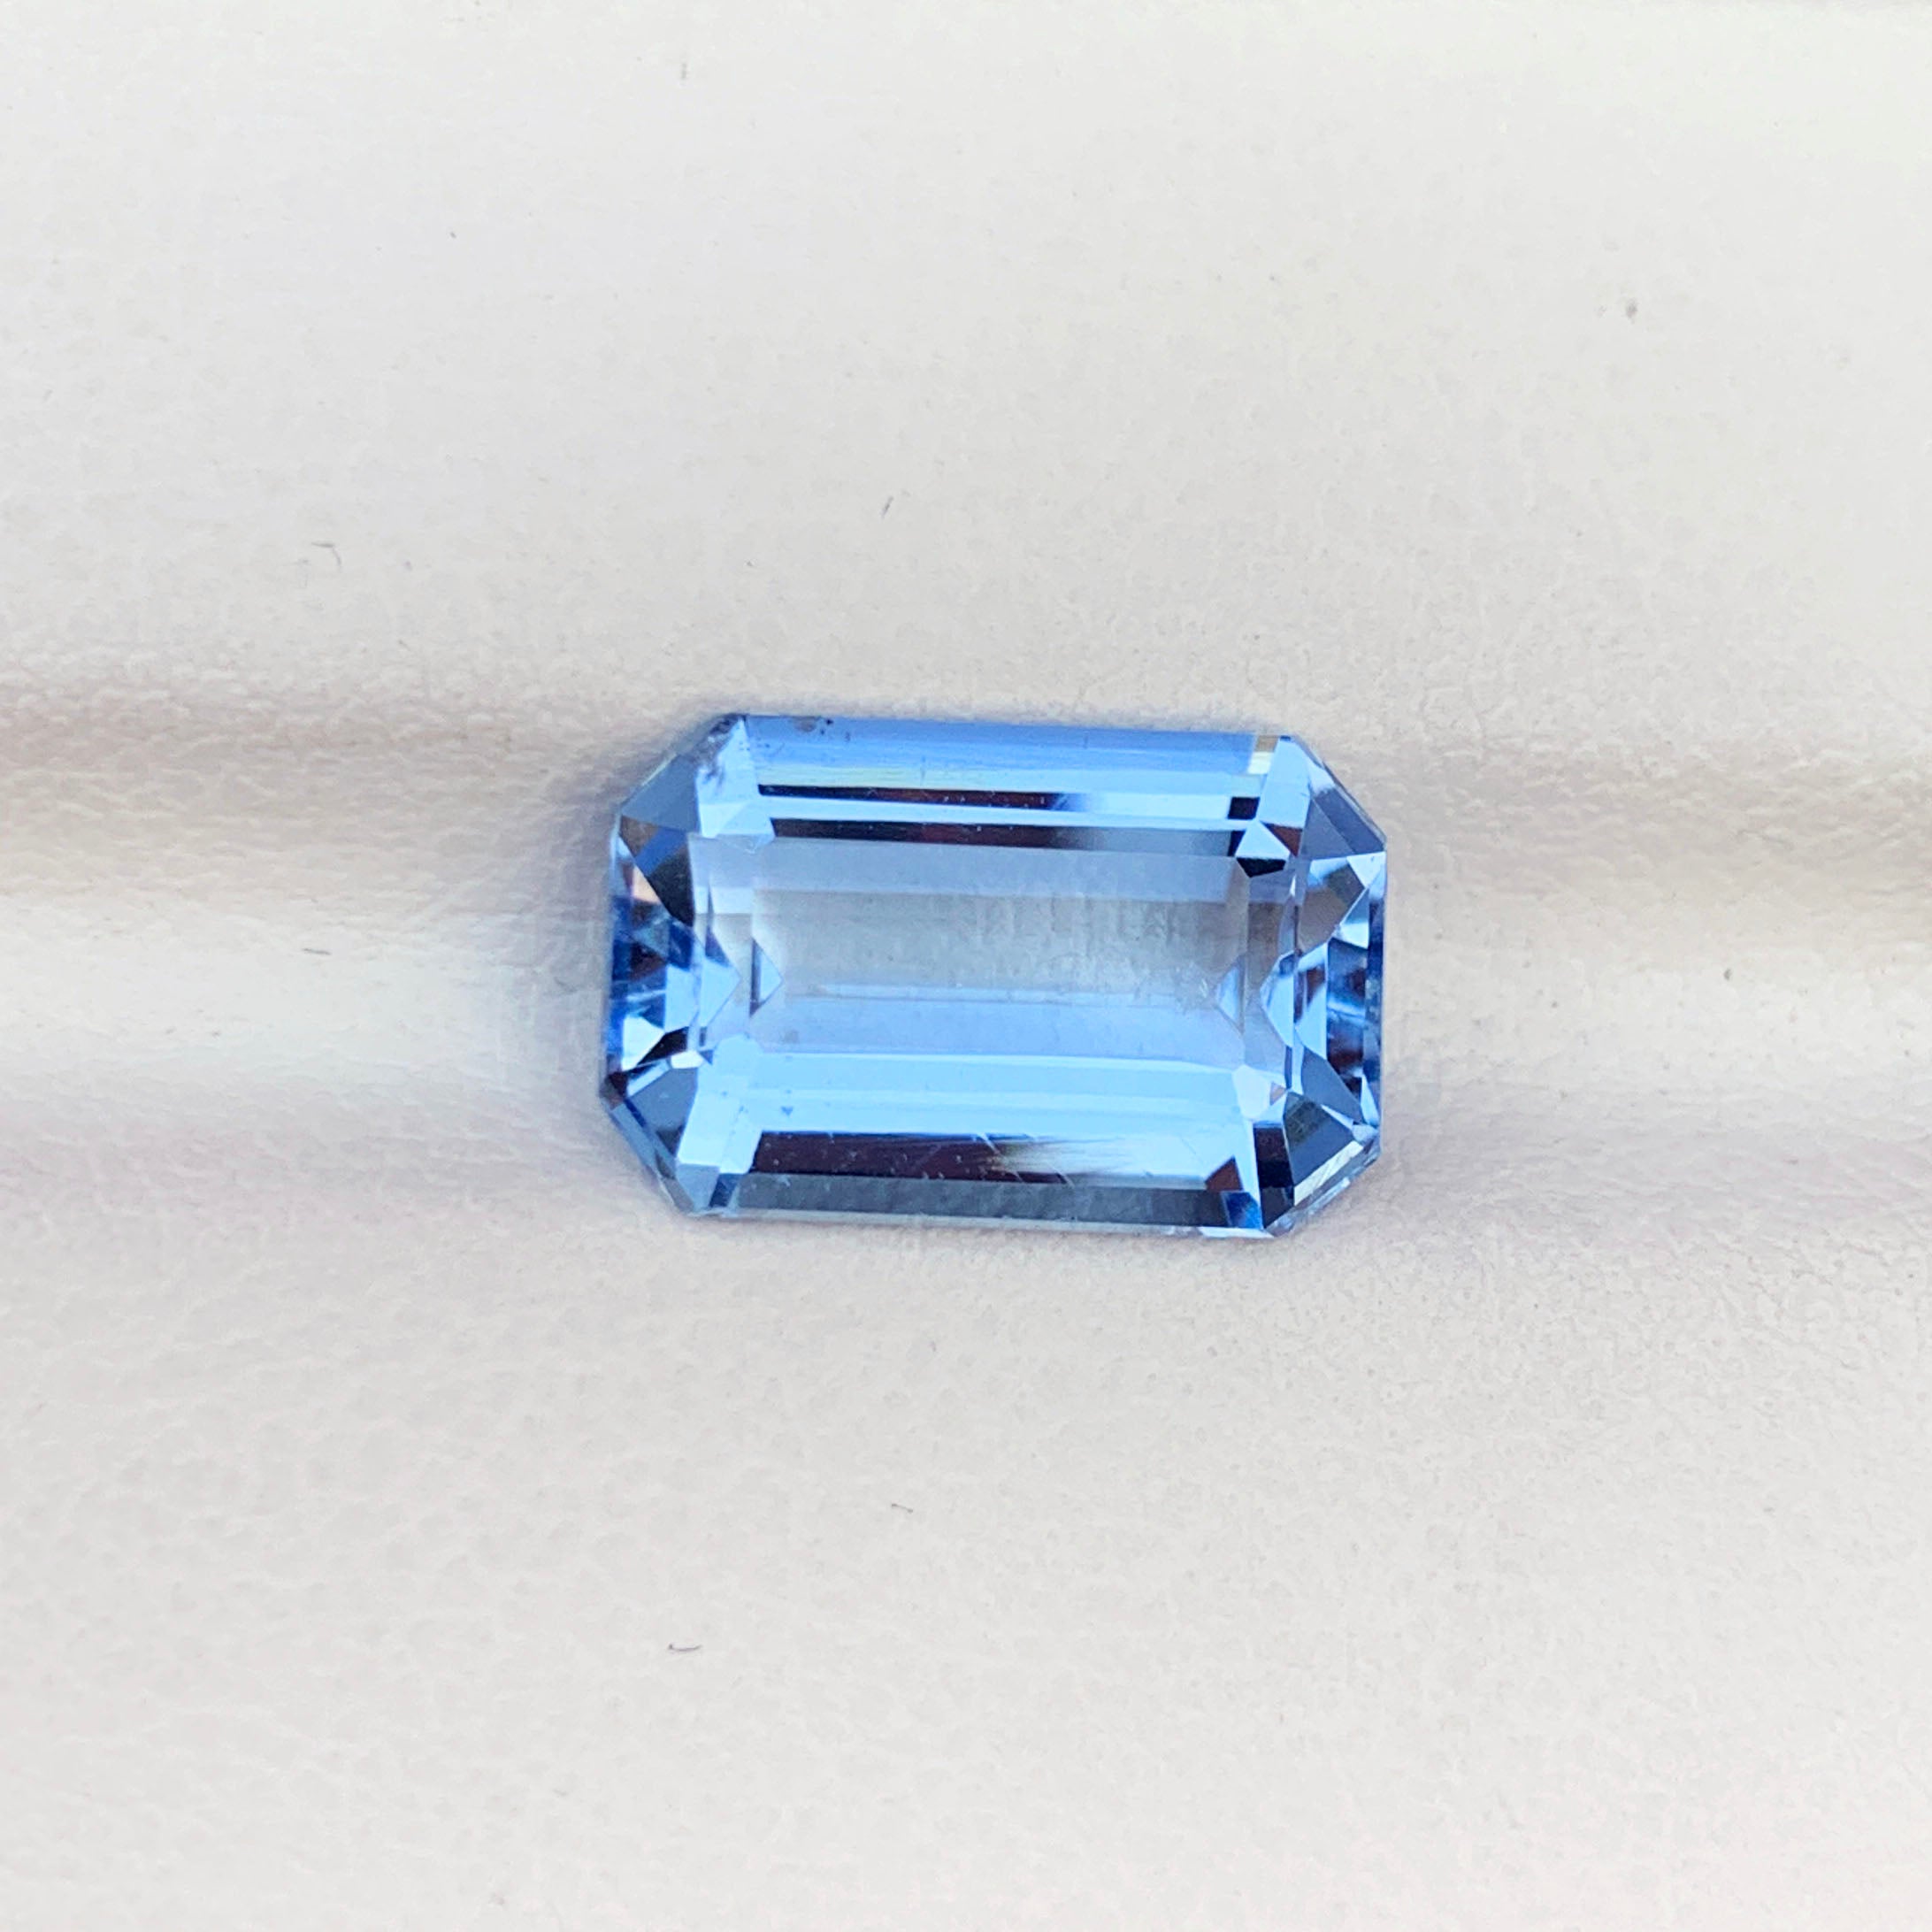 Emerald Cut Aquamarine Loose Stone, Aqua Blue Aquamarine Gemstone, 4.05 CT